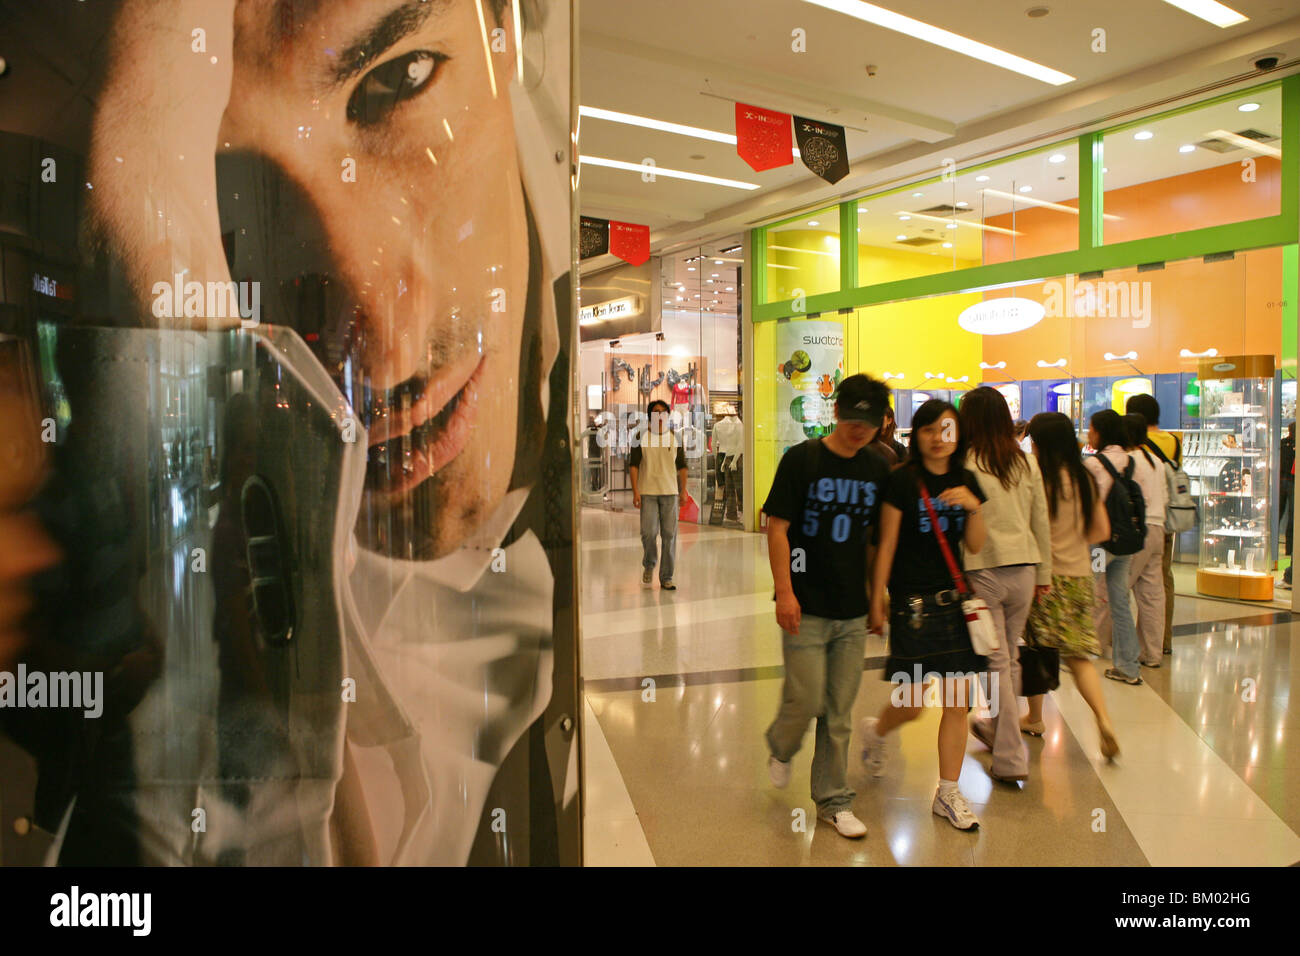 Gallerie dello shopping di Shanghai, centri commerciali, escalator, negozi, magazzini, mega centri commerciali, multipiano, pubblicità, consumatori, moda, Foto Stock